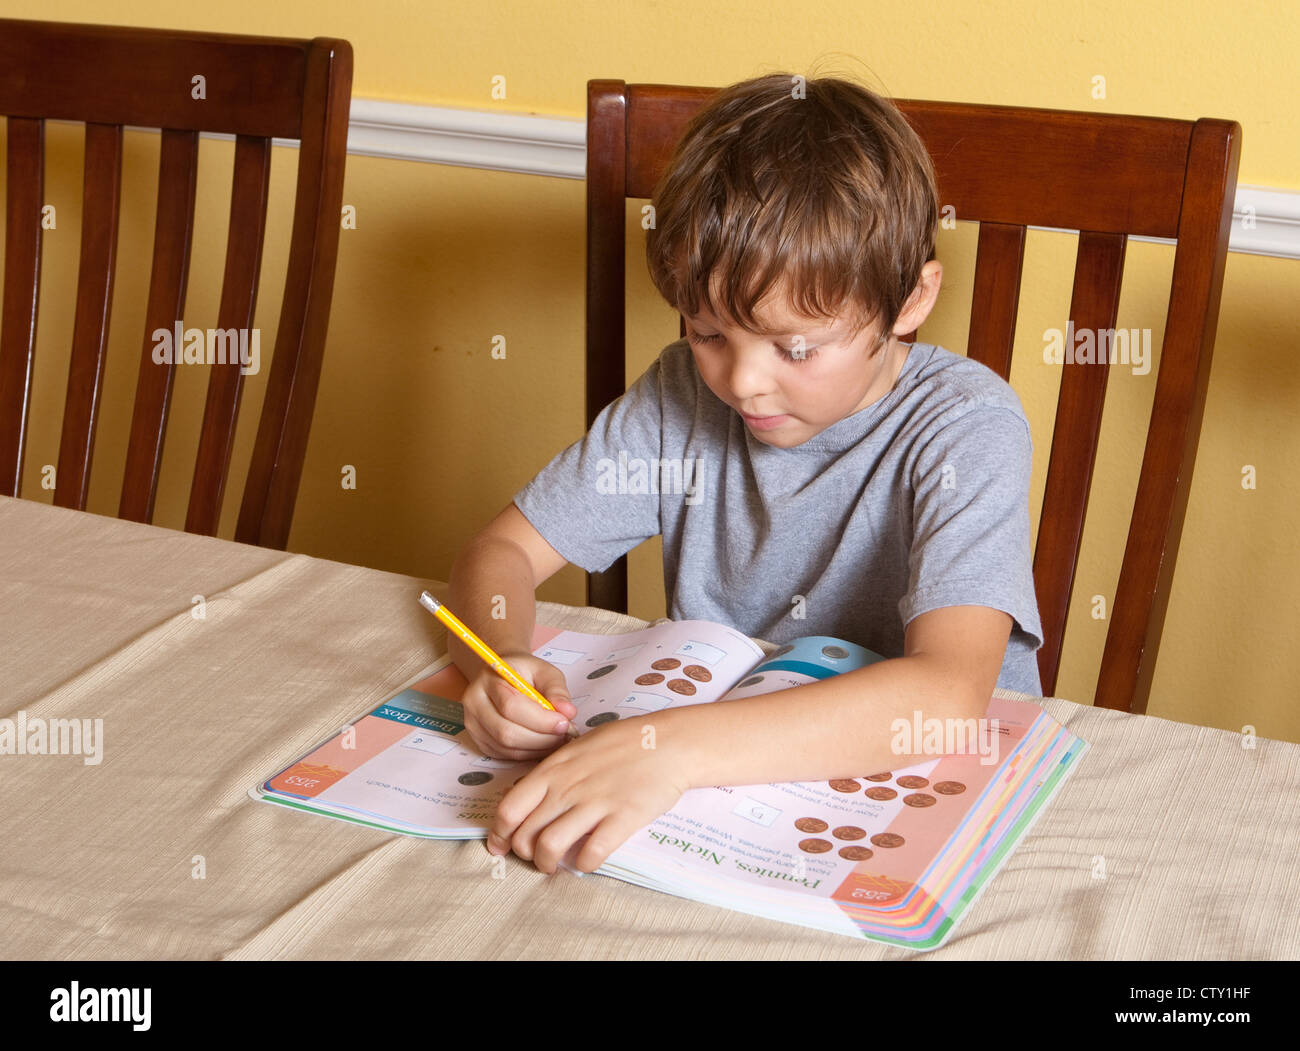 7 Jahre Alter mexikanisch-amerikanischen Grundschule Alter Junge hat Mathe-Hausaufgaben mit Fingern zählen zu Hause Stockfoto